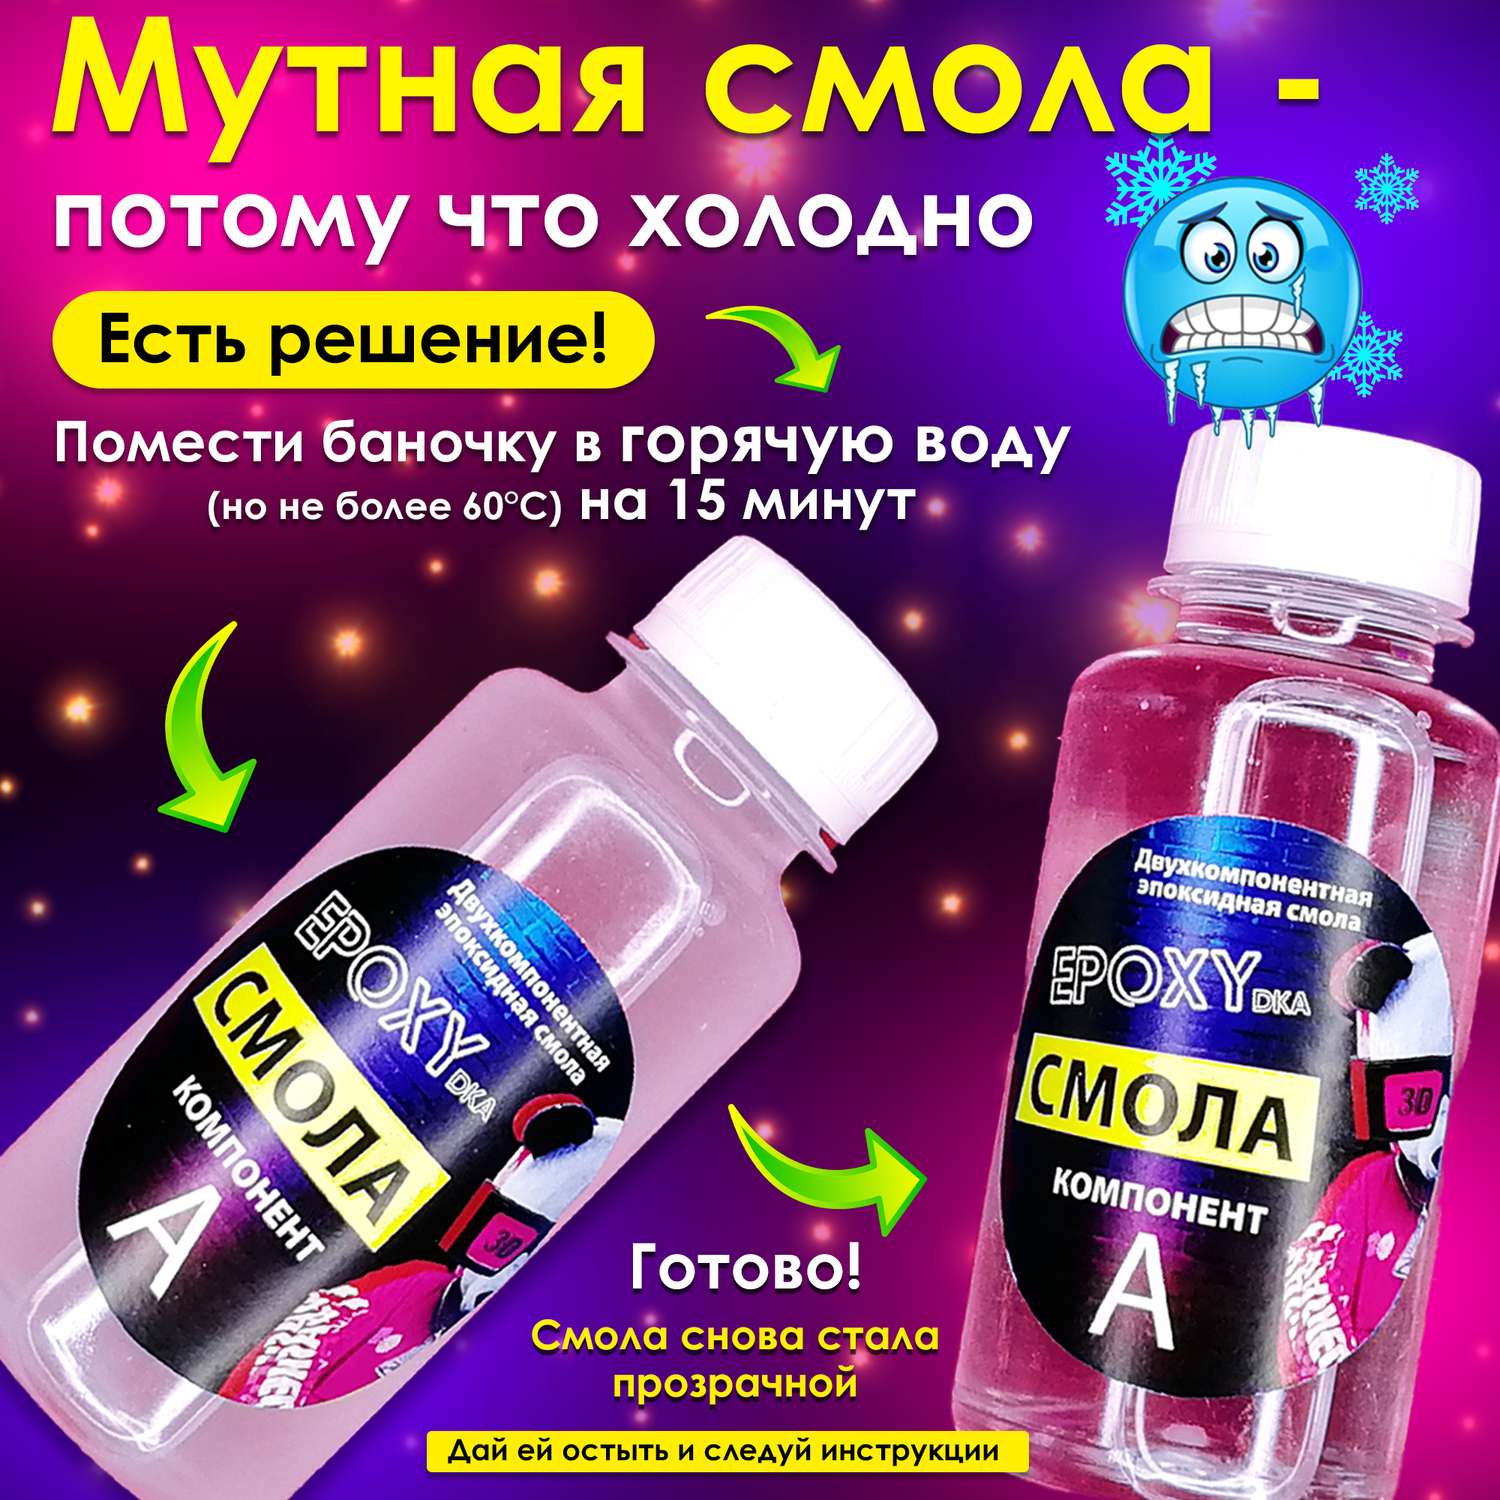 Набор для творчества MINI-TOYS Эпоксидная смола/EPOXYdka Normal BOX 3/Мармеладные мишки - фото 3